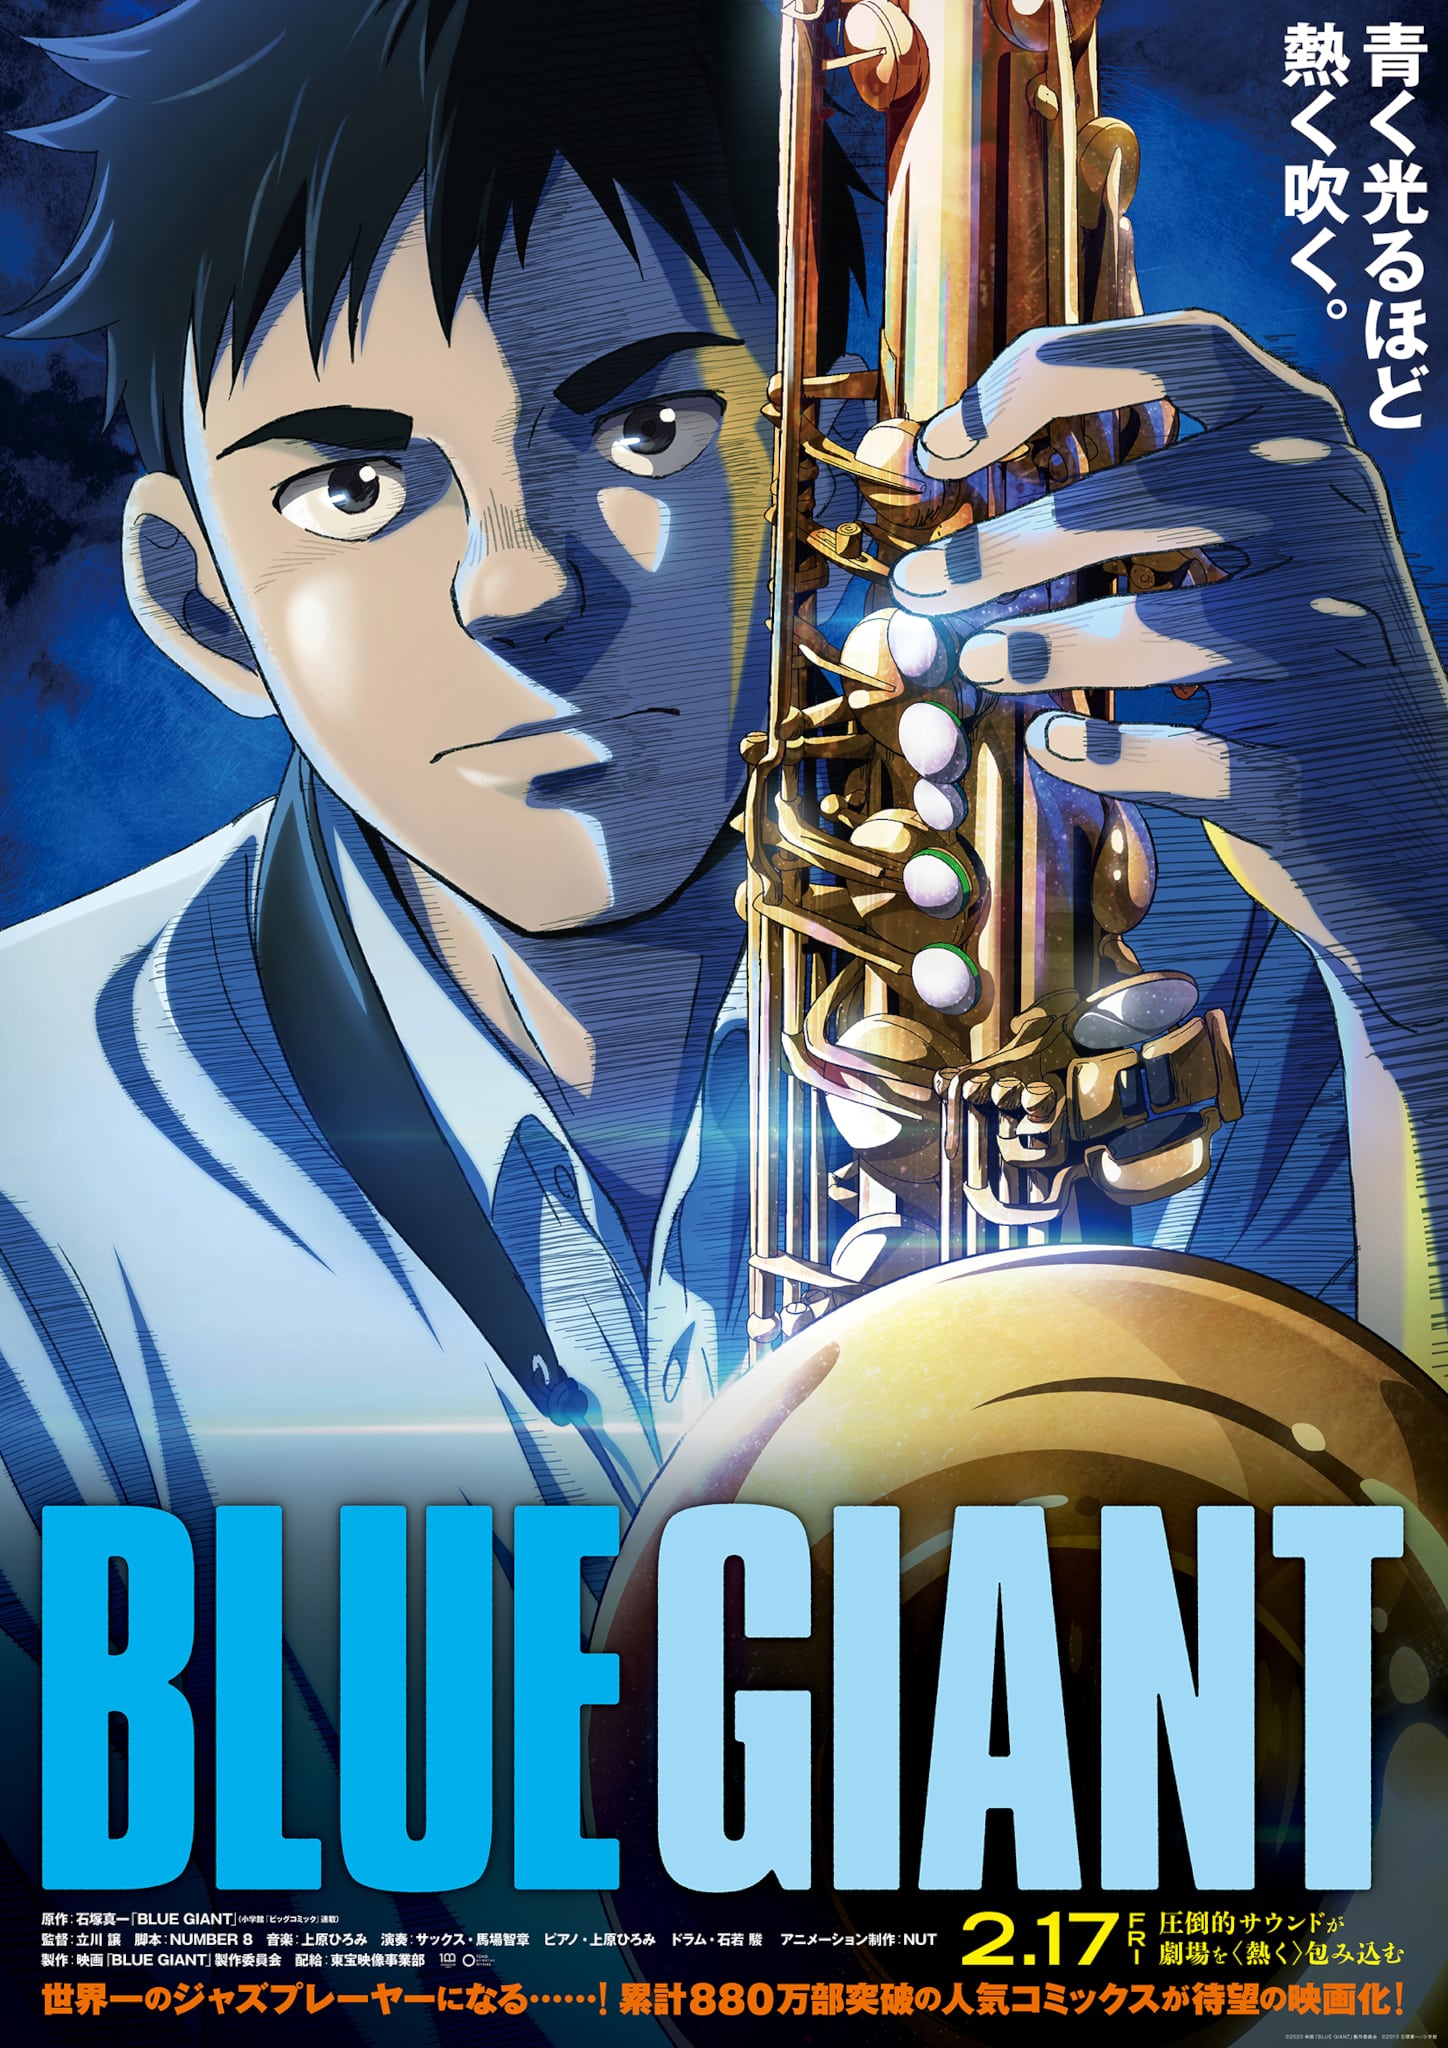 Troisième visuel pour le film Blue Giant